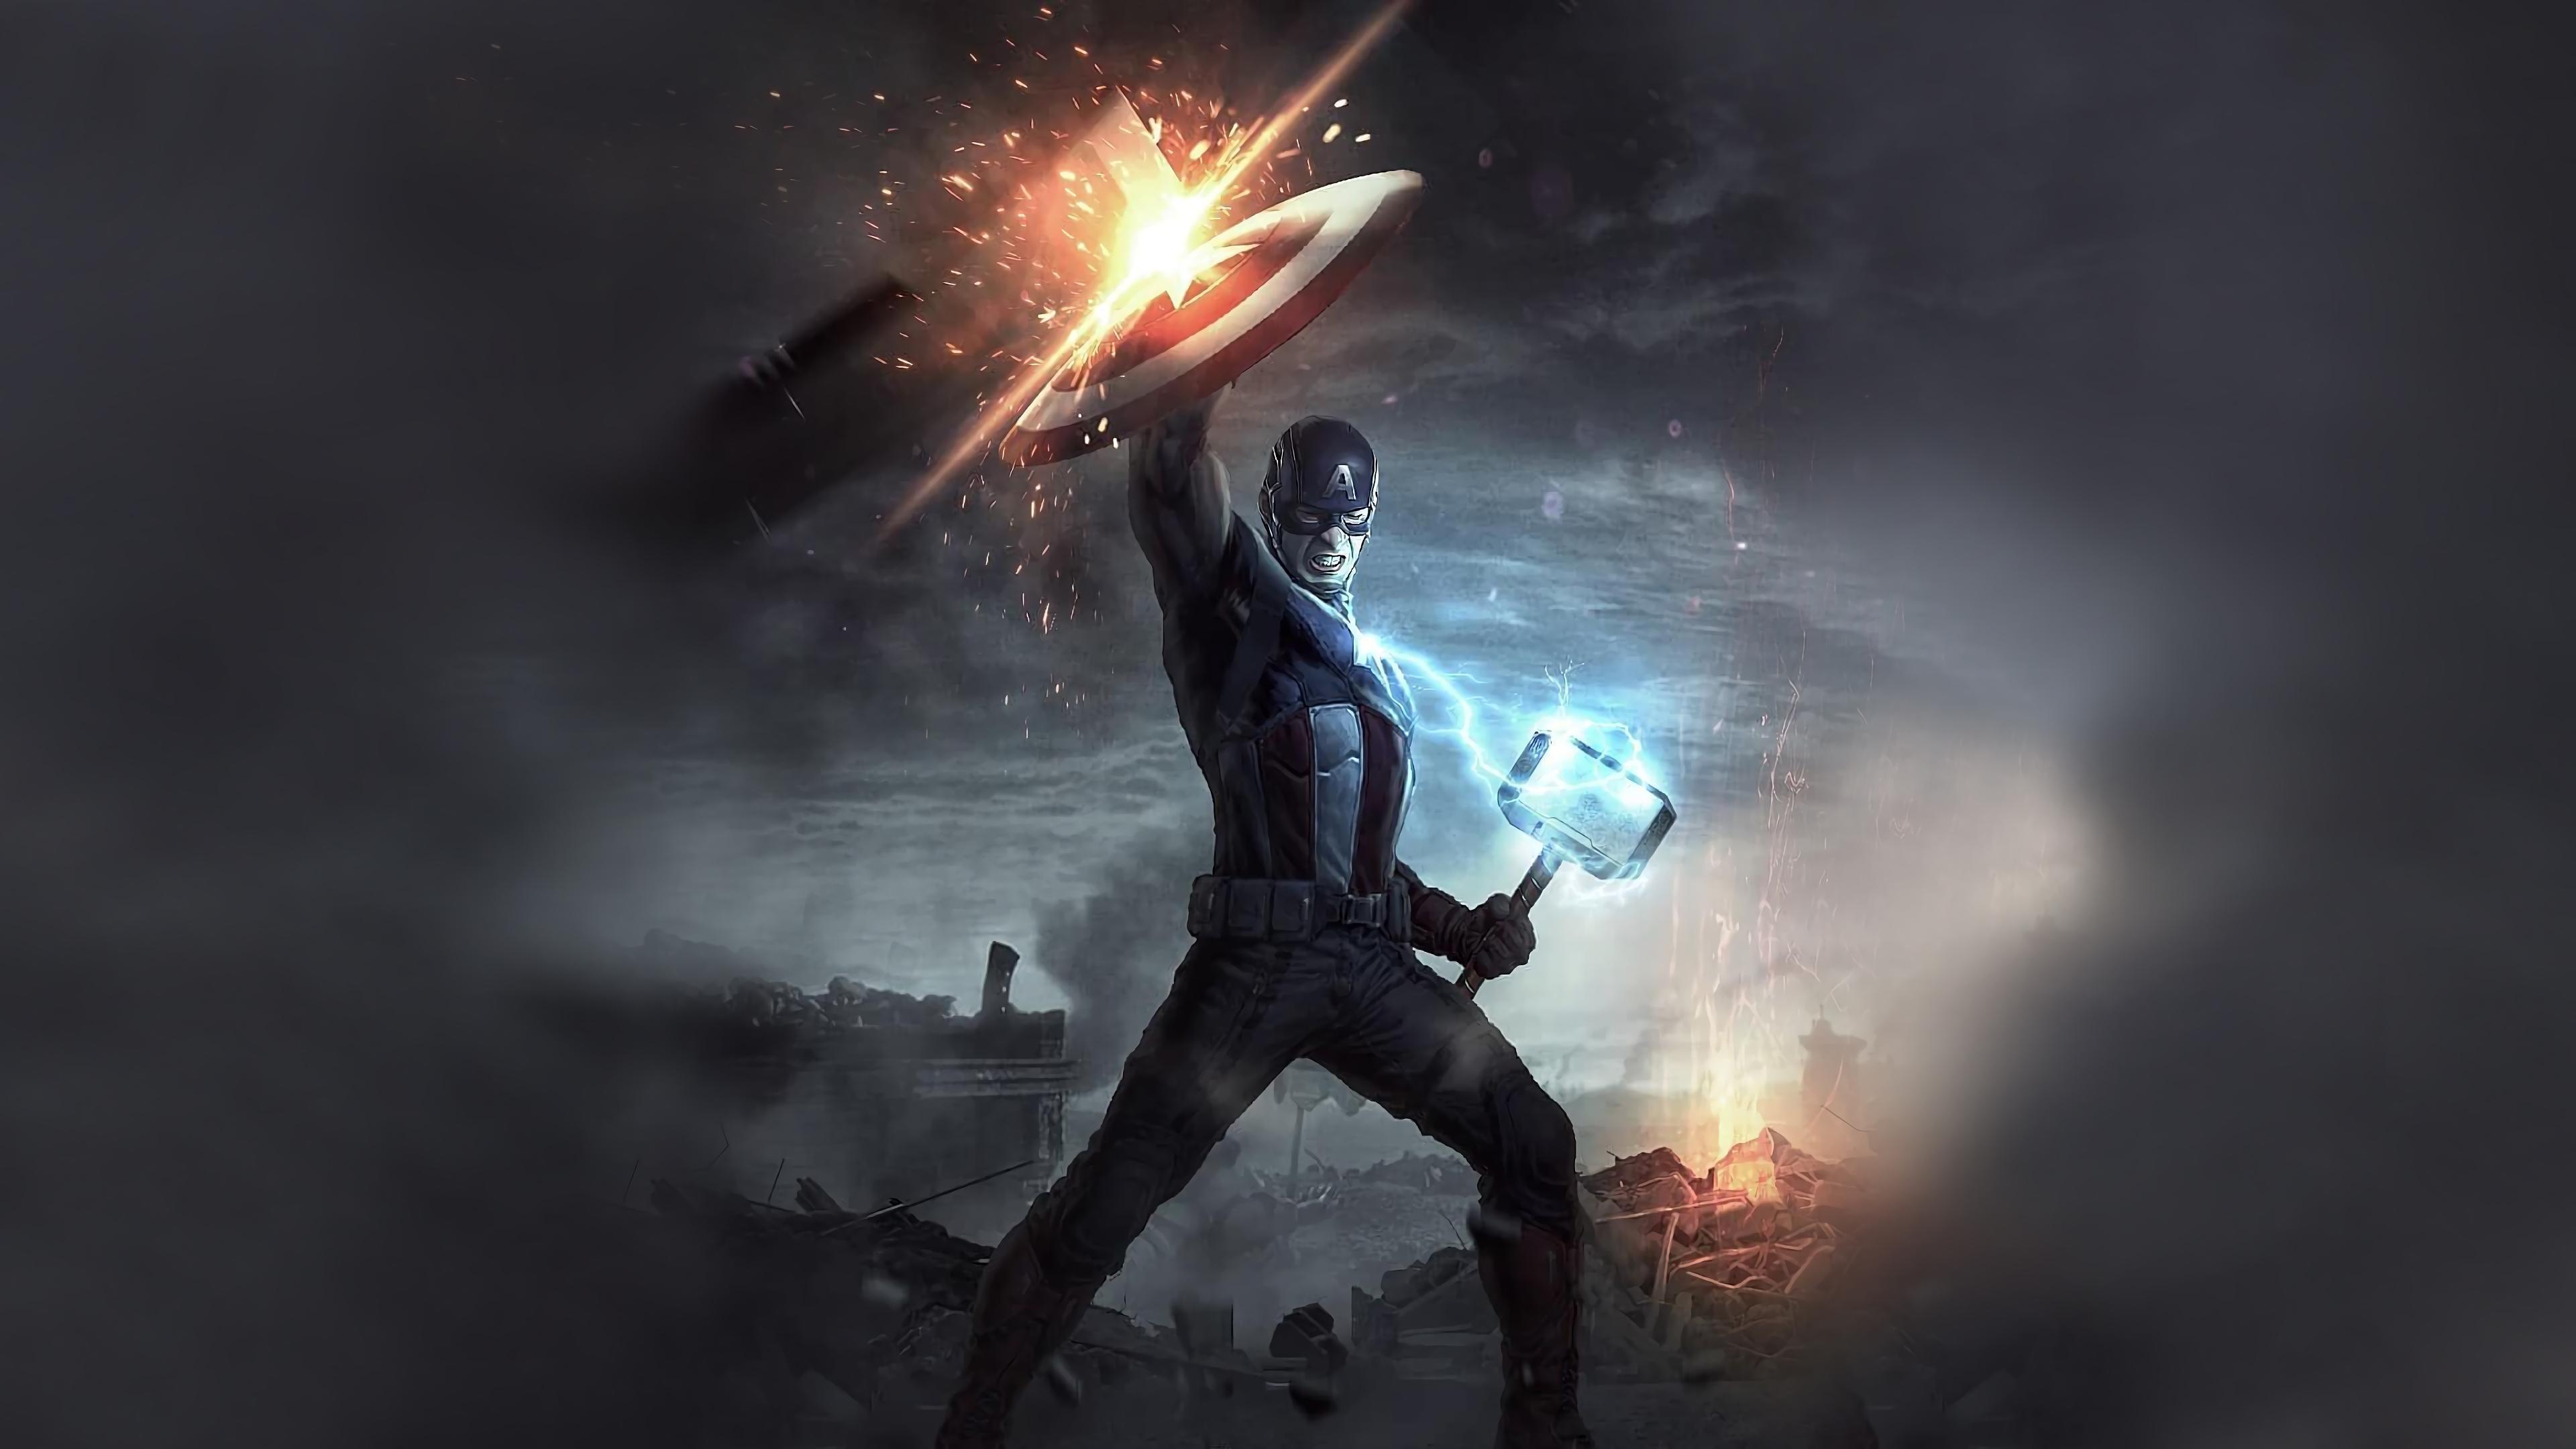 HD wallpaper, Captain America, Hammer, 4K, Mjolnir, Avengers Endgame